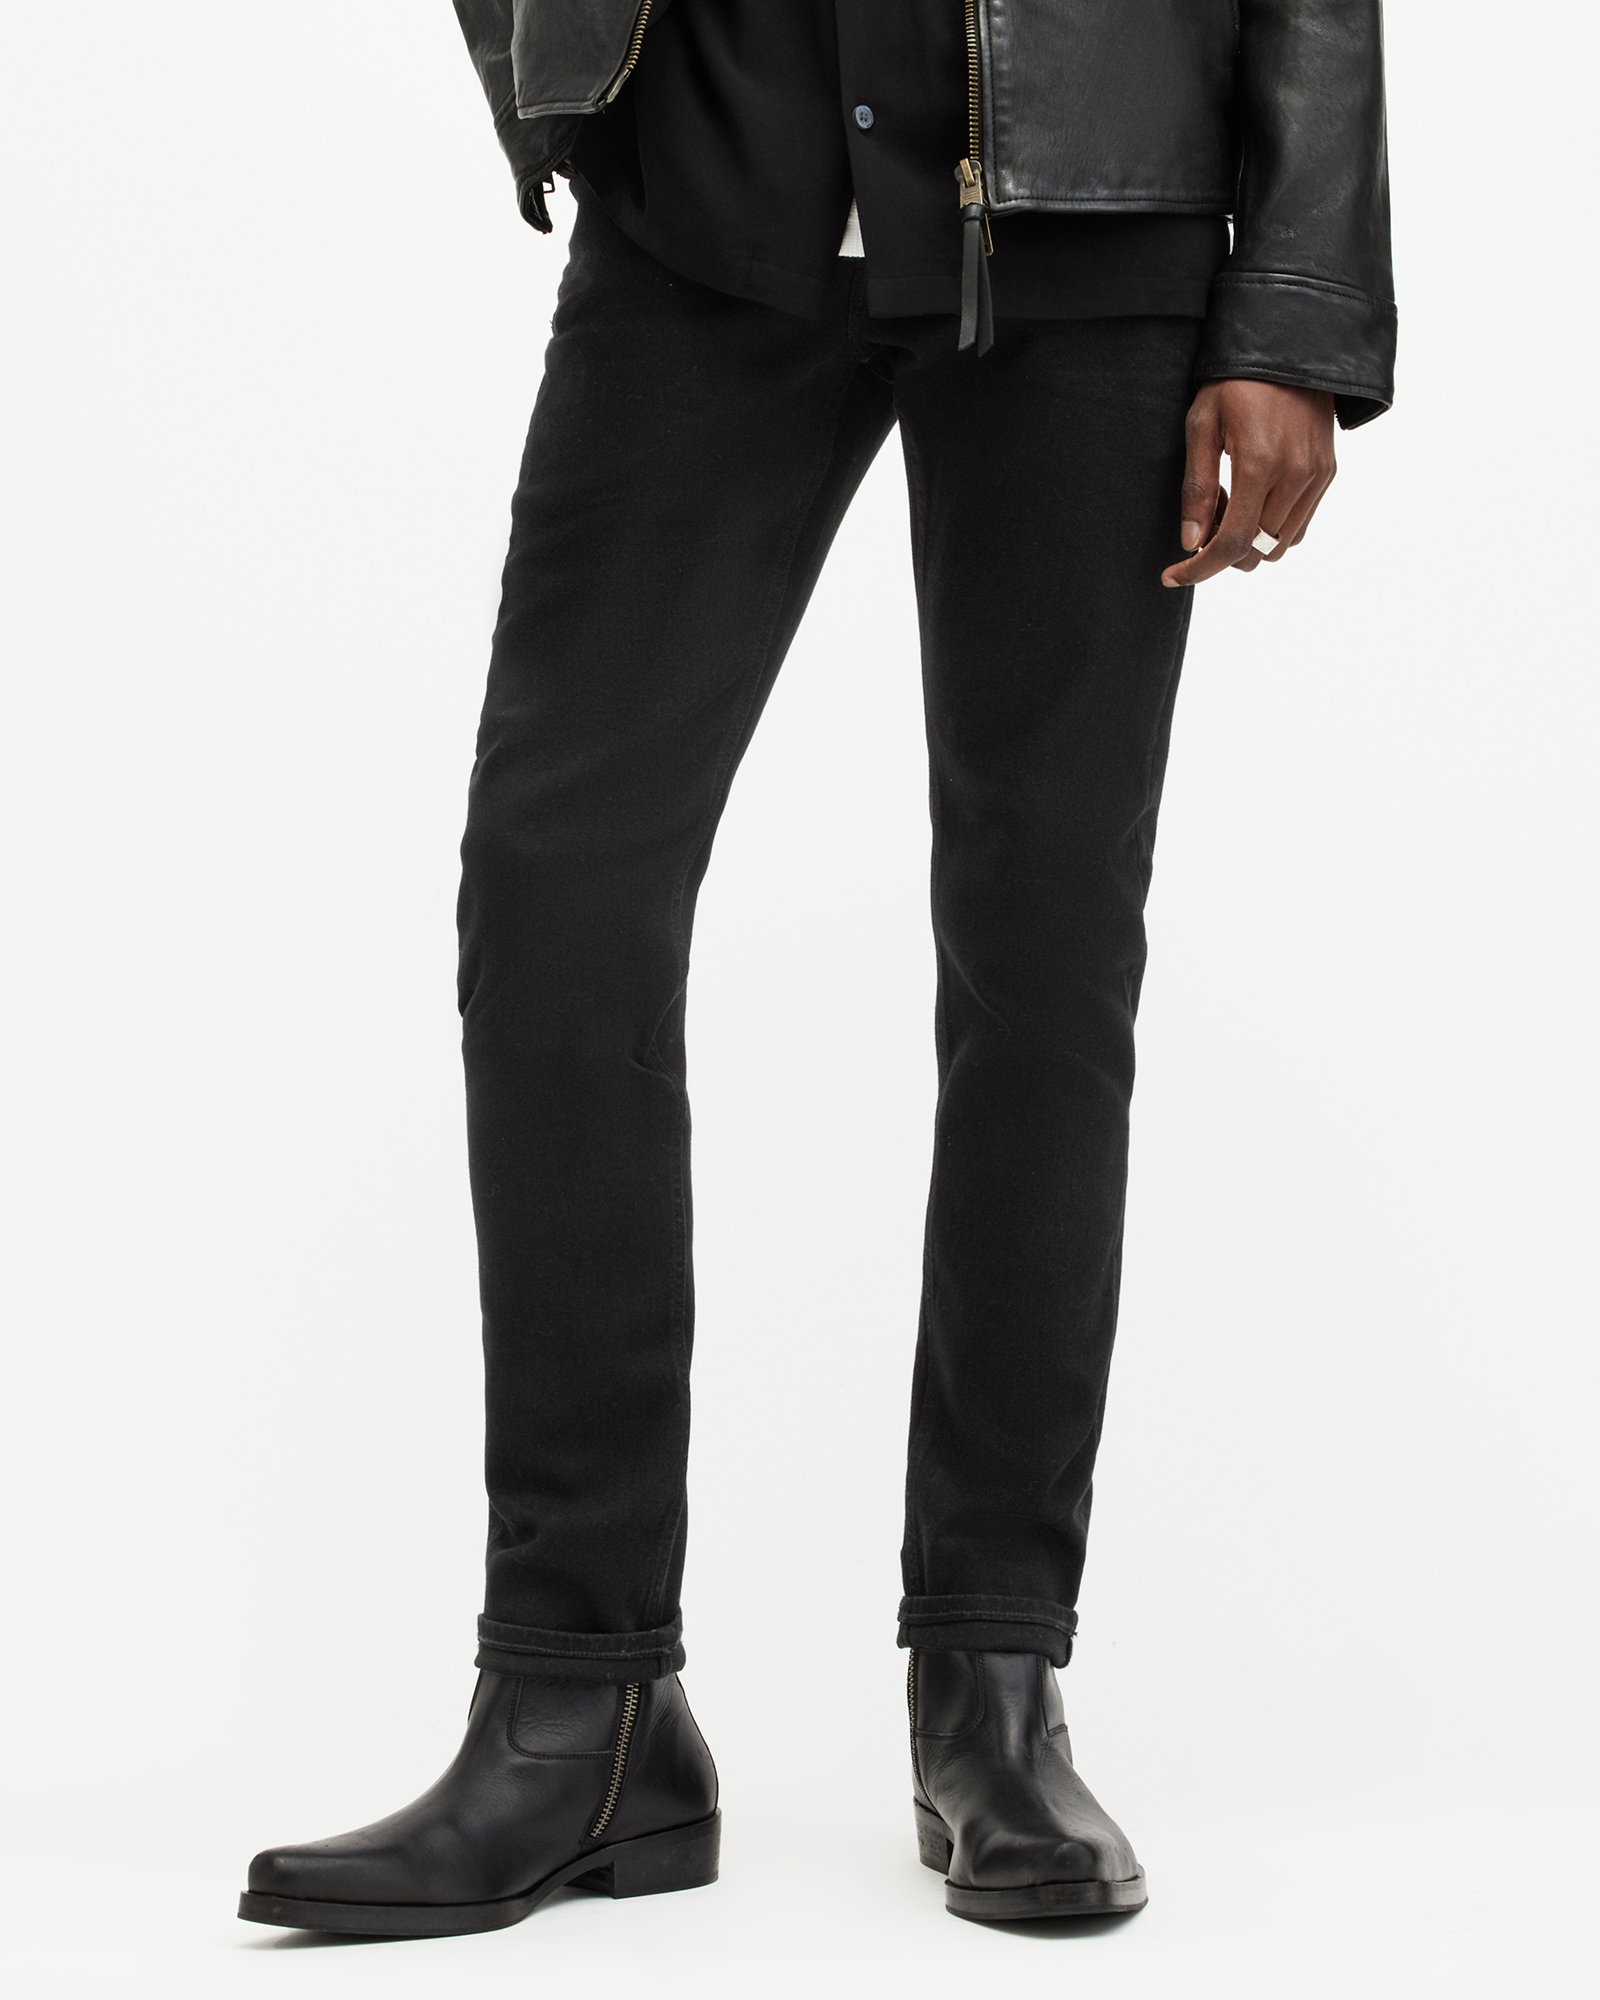 AllSaints Men's Cotton Traditional Rex Slim Jeans, Black, Size: 30/L32